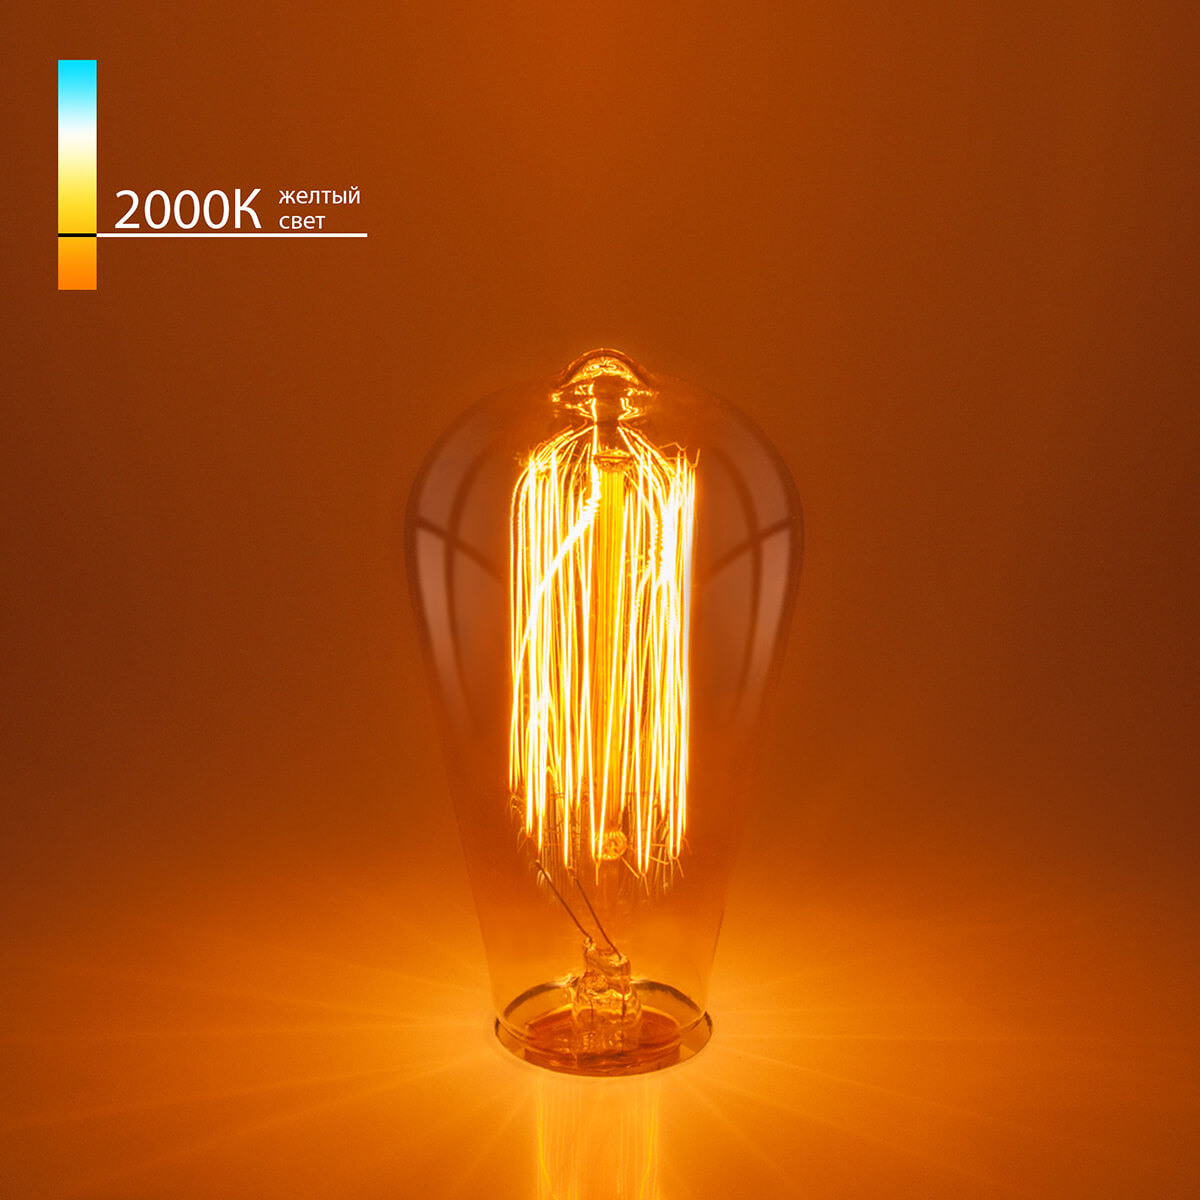 Лампа накаливания Elektrostandard диммируемая E27 60W прозрачная 4690389082153